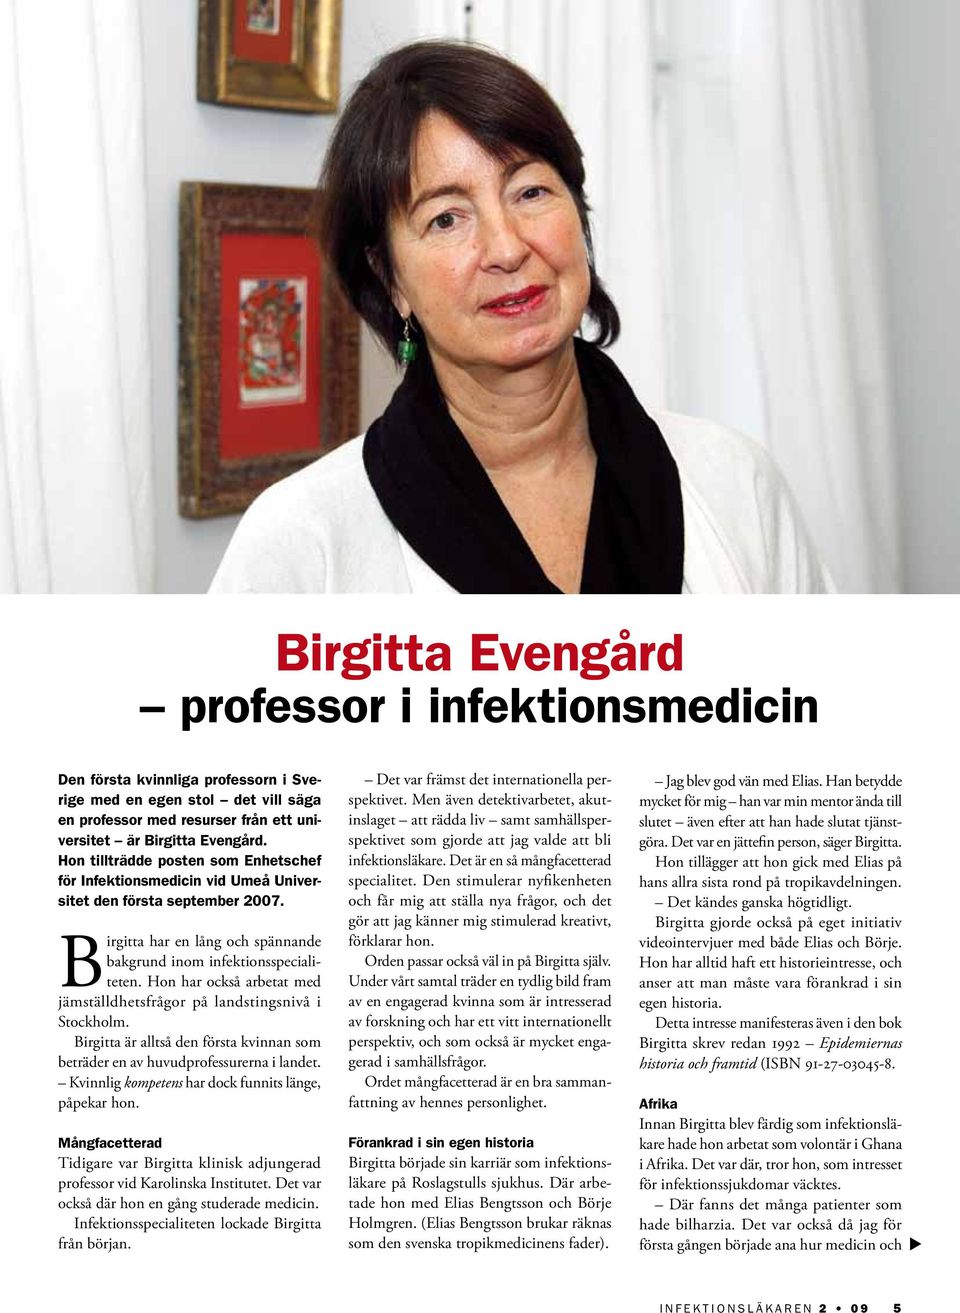 Hon har också arbetat med jämställdhetsfrågor på landstingsnivå i Stockholm. Birgitta är alltså den första kvinnan som beträder en av huvudprofessurerna i landet.